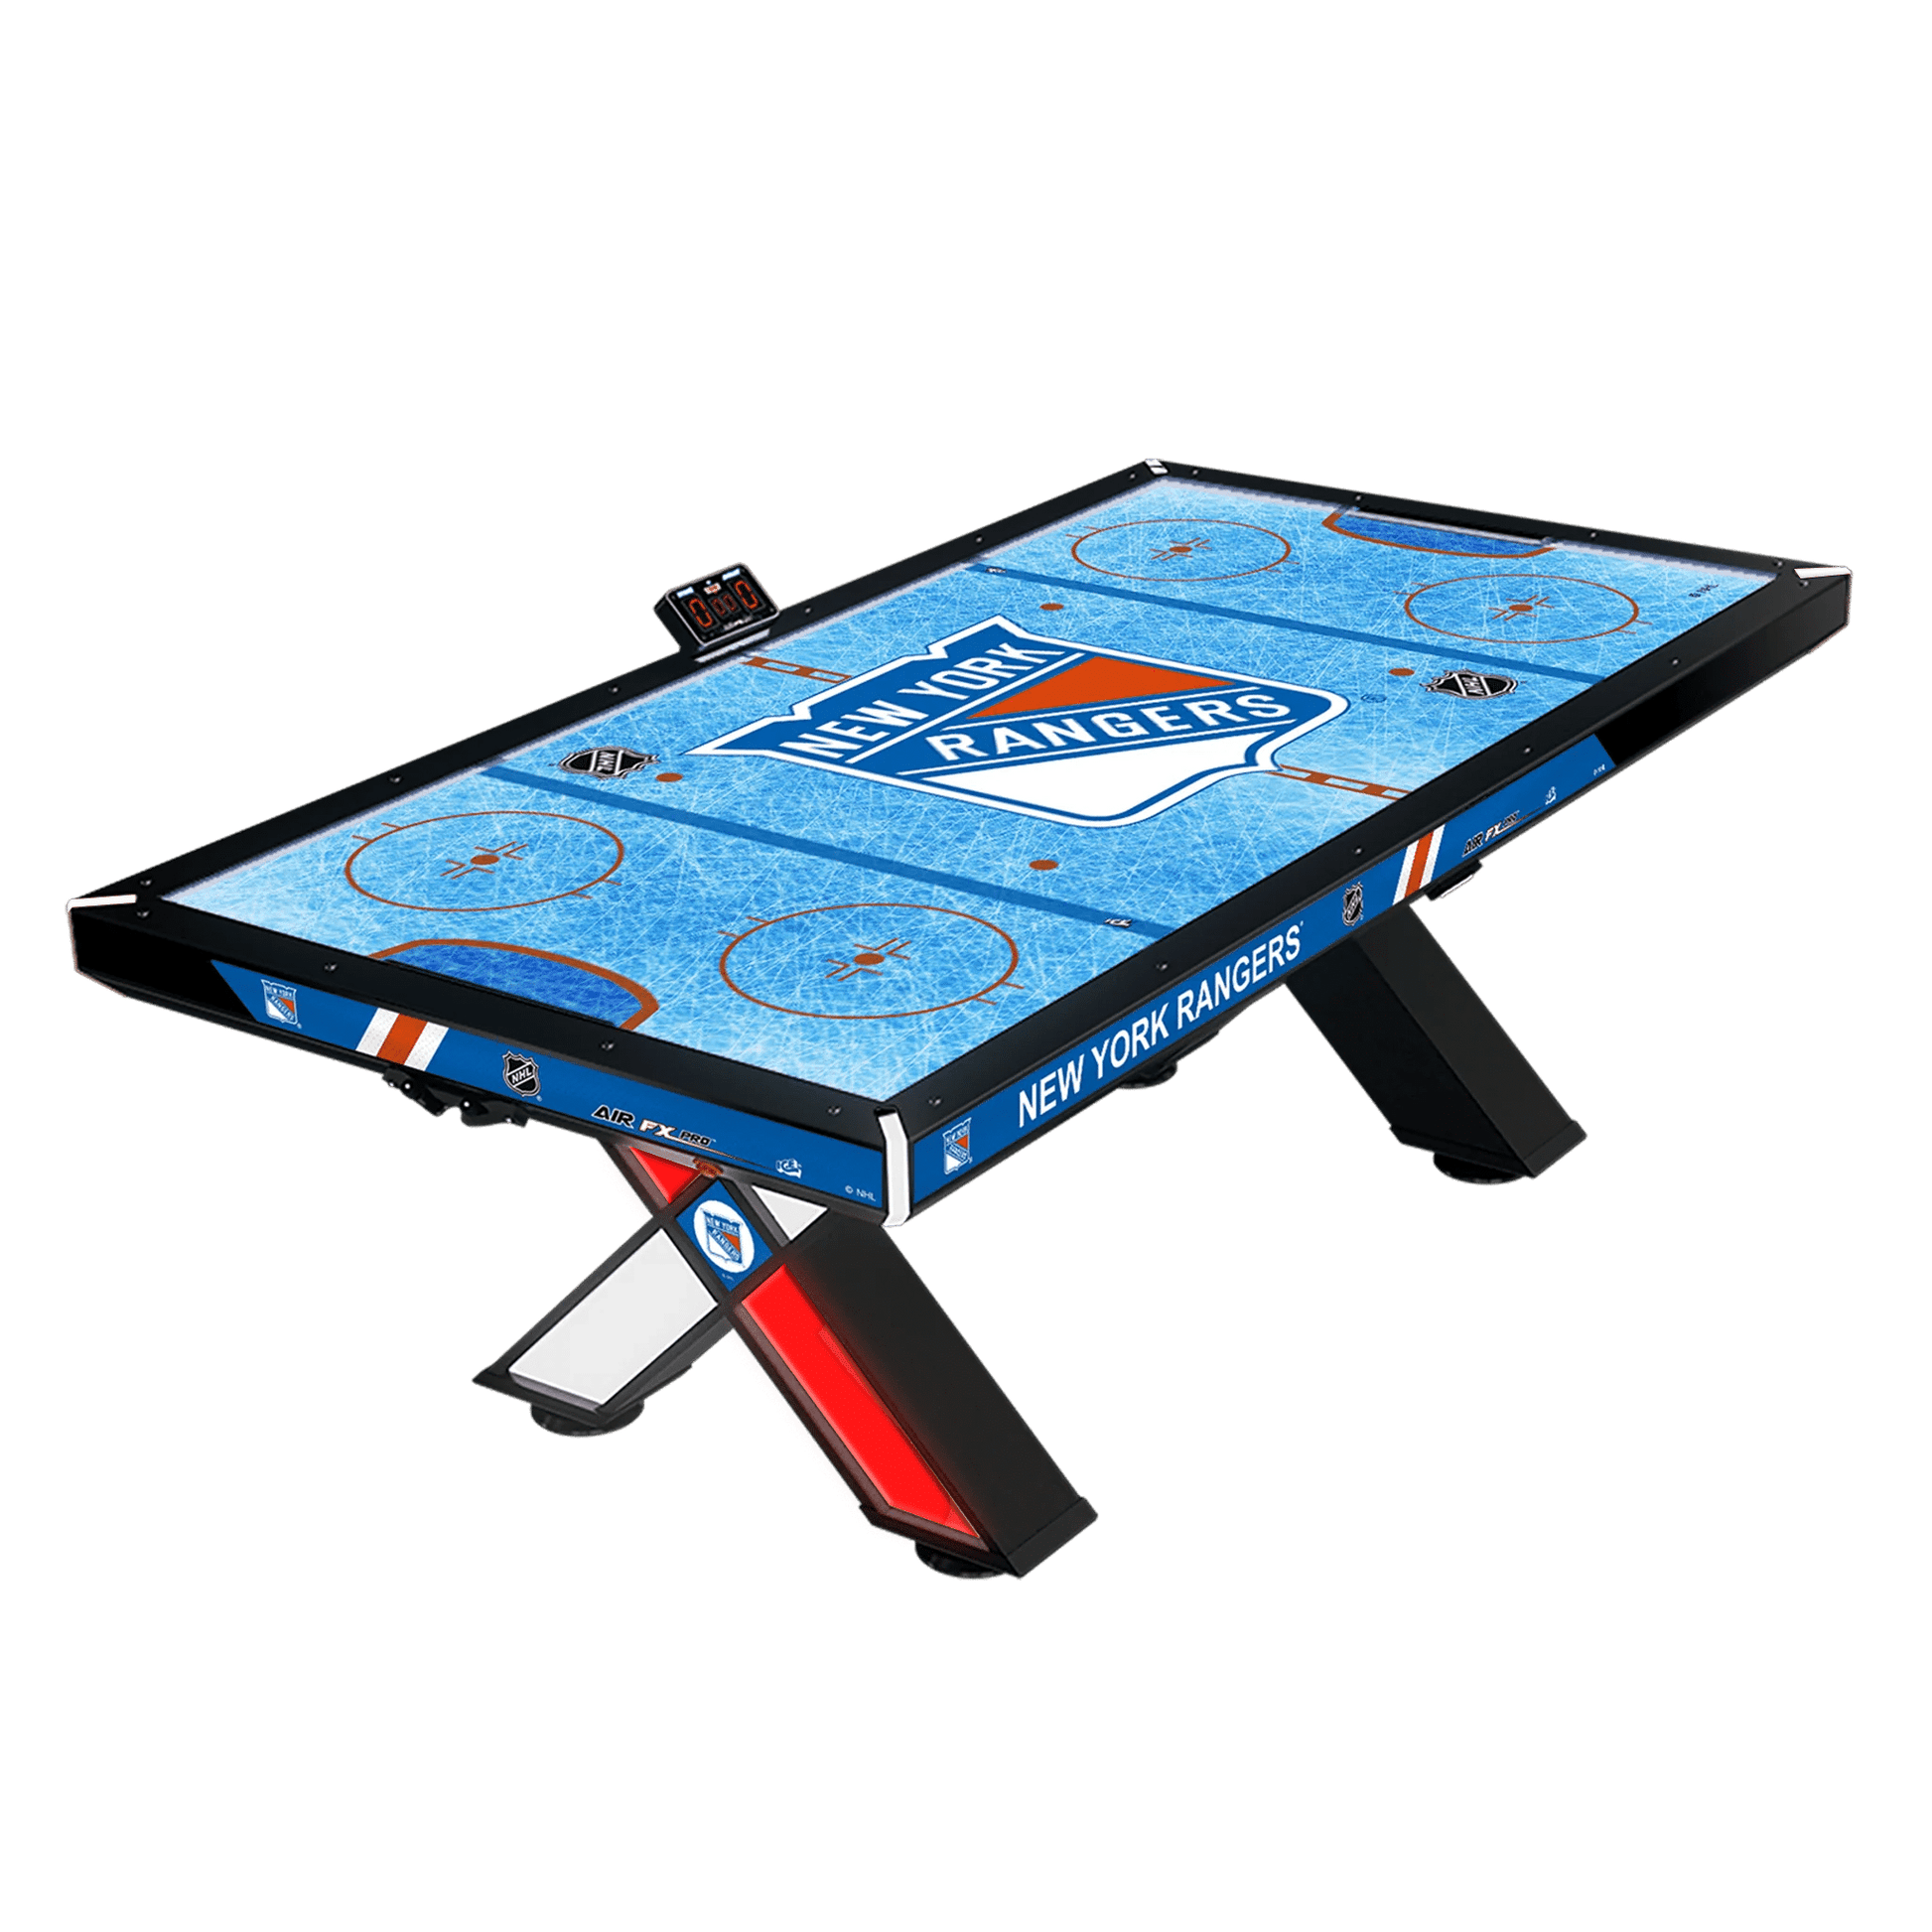 New York Rangers NHL Air FX Pro Air Hockey  Home Arcade Games   